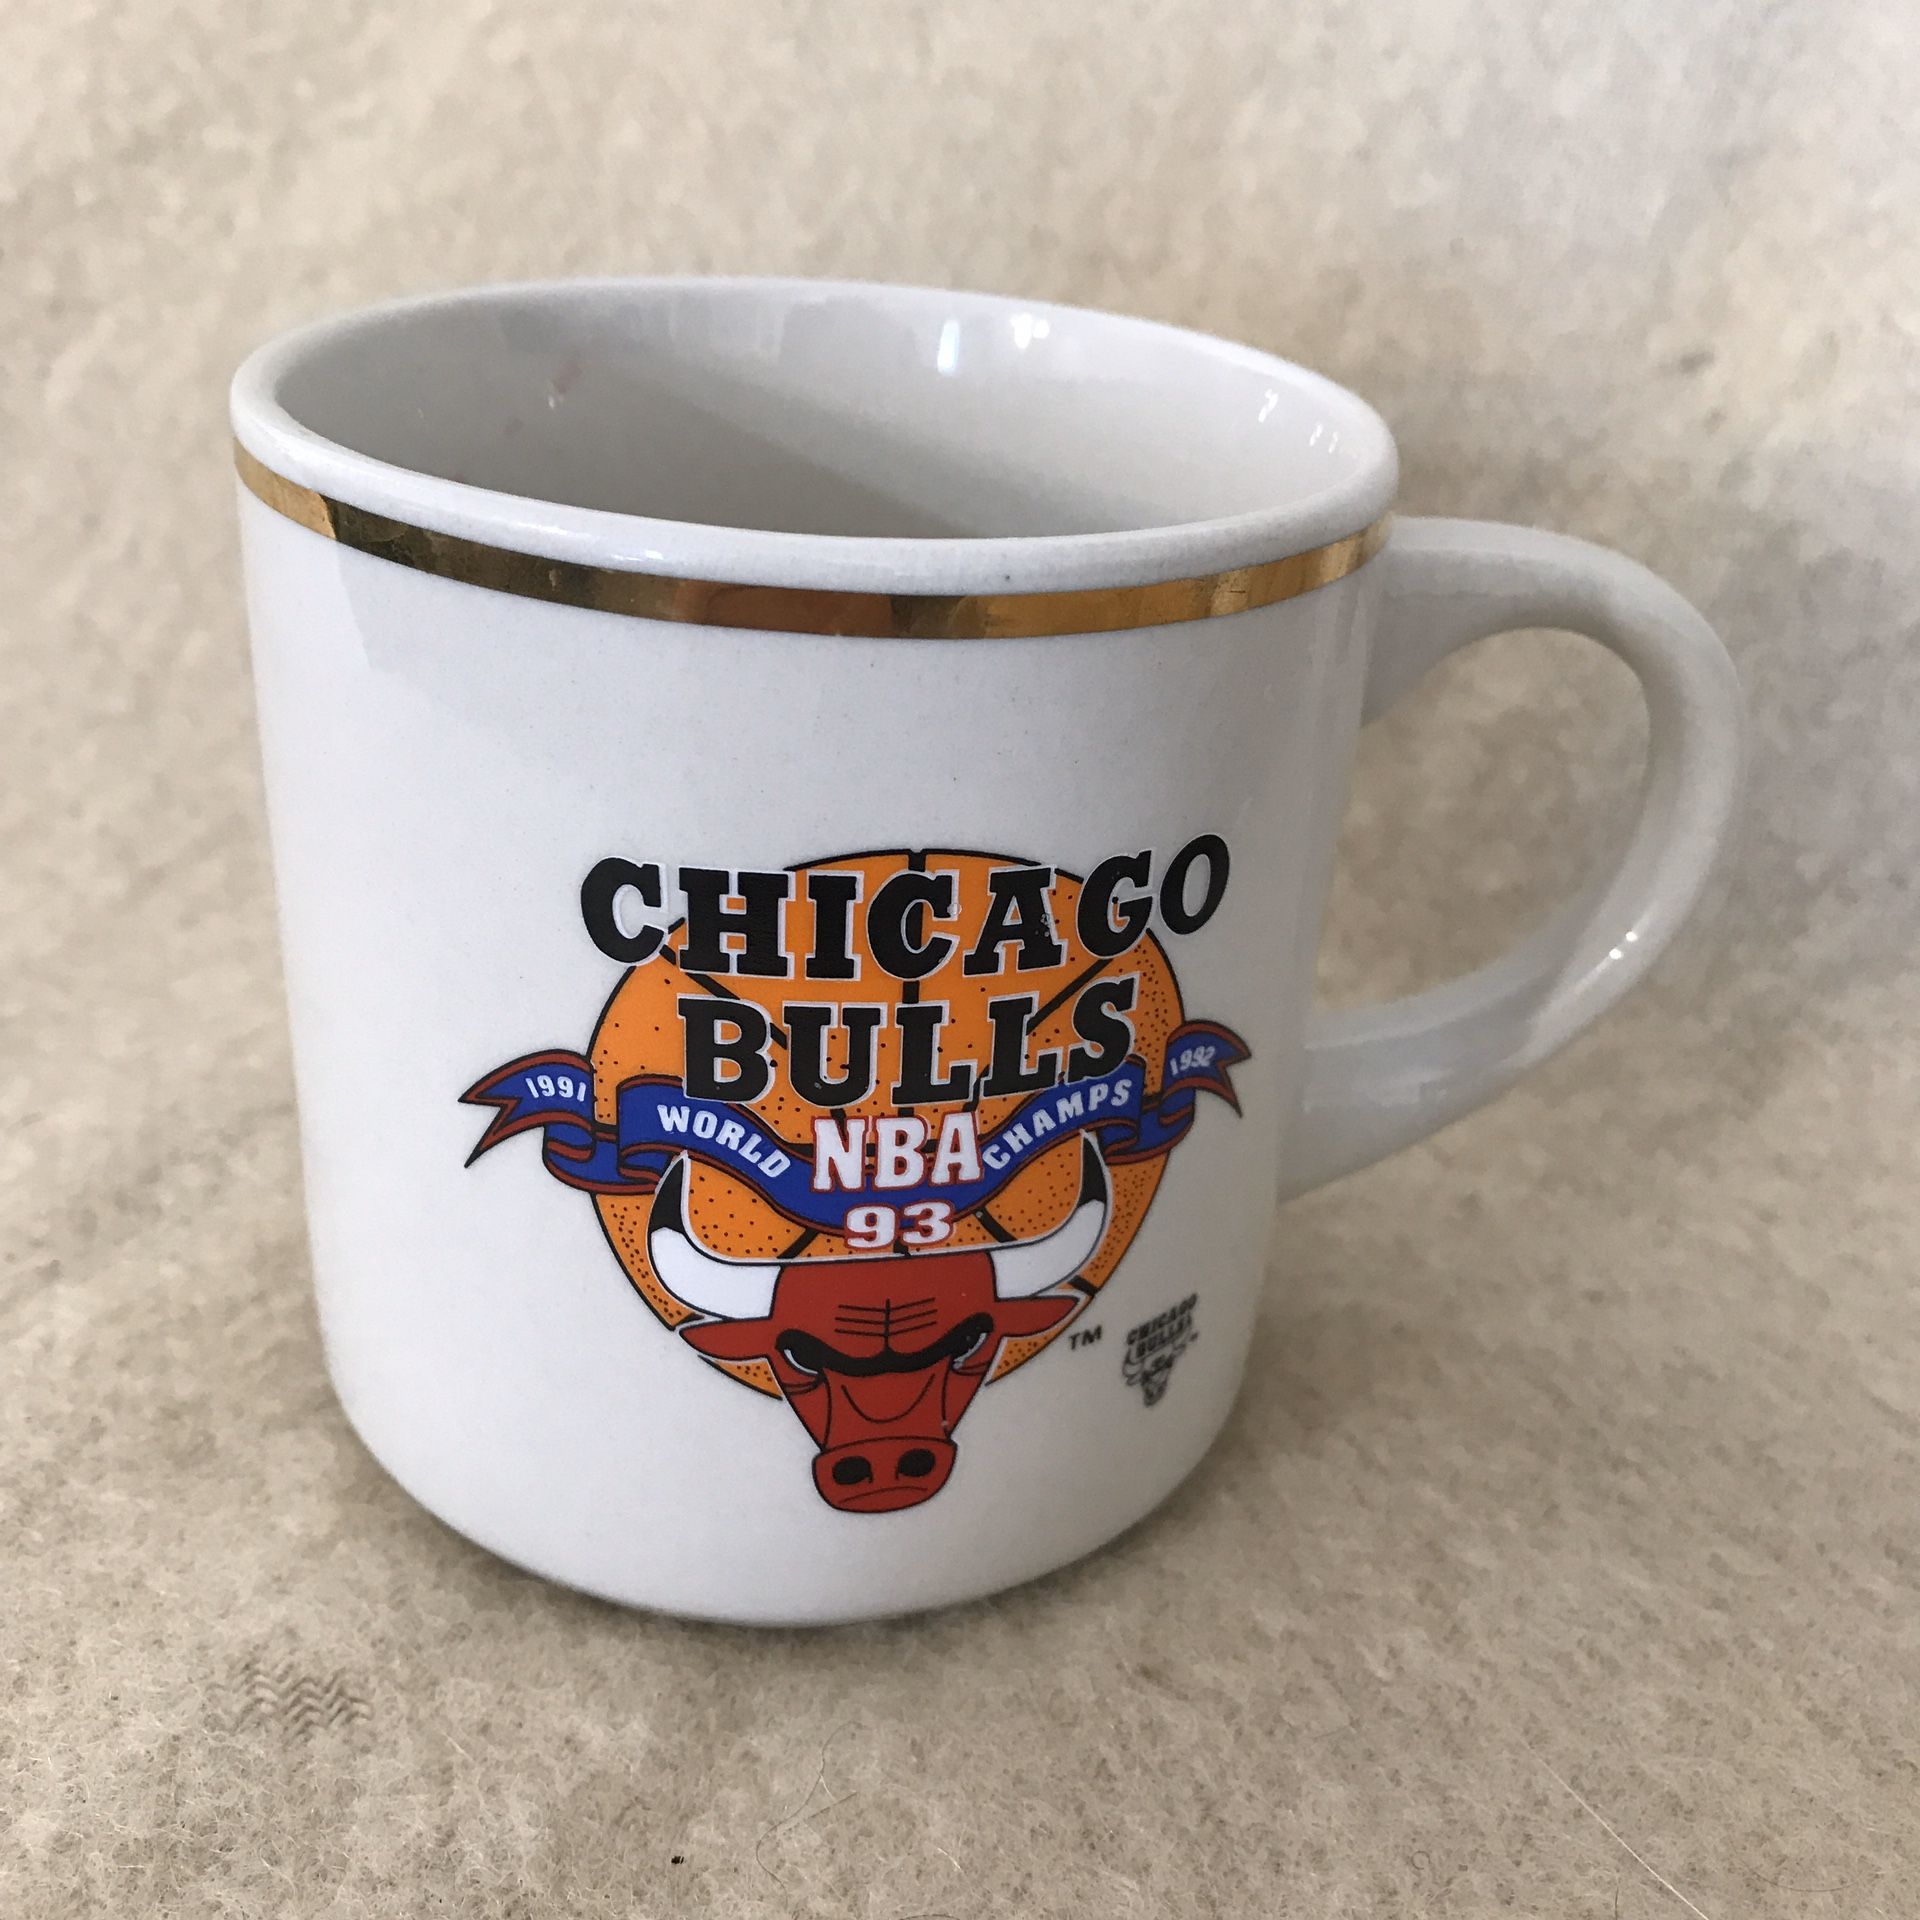 Chicago Bulls 1993 NBA World Champs Coffee Mug